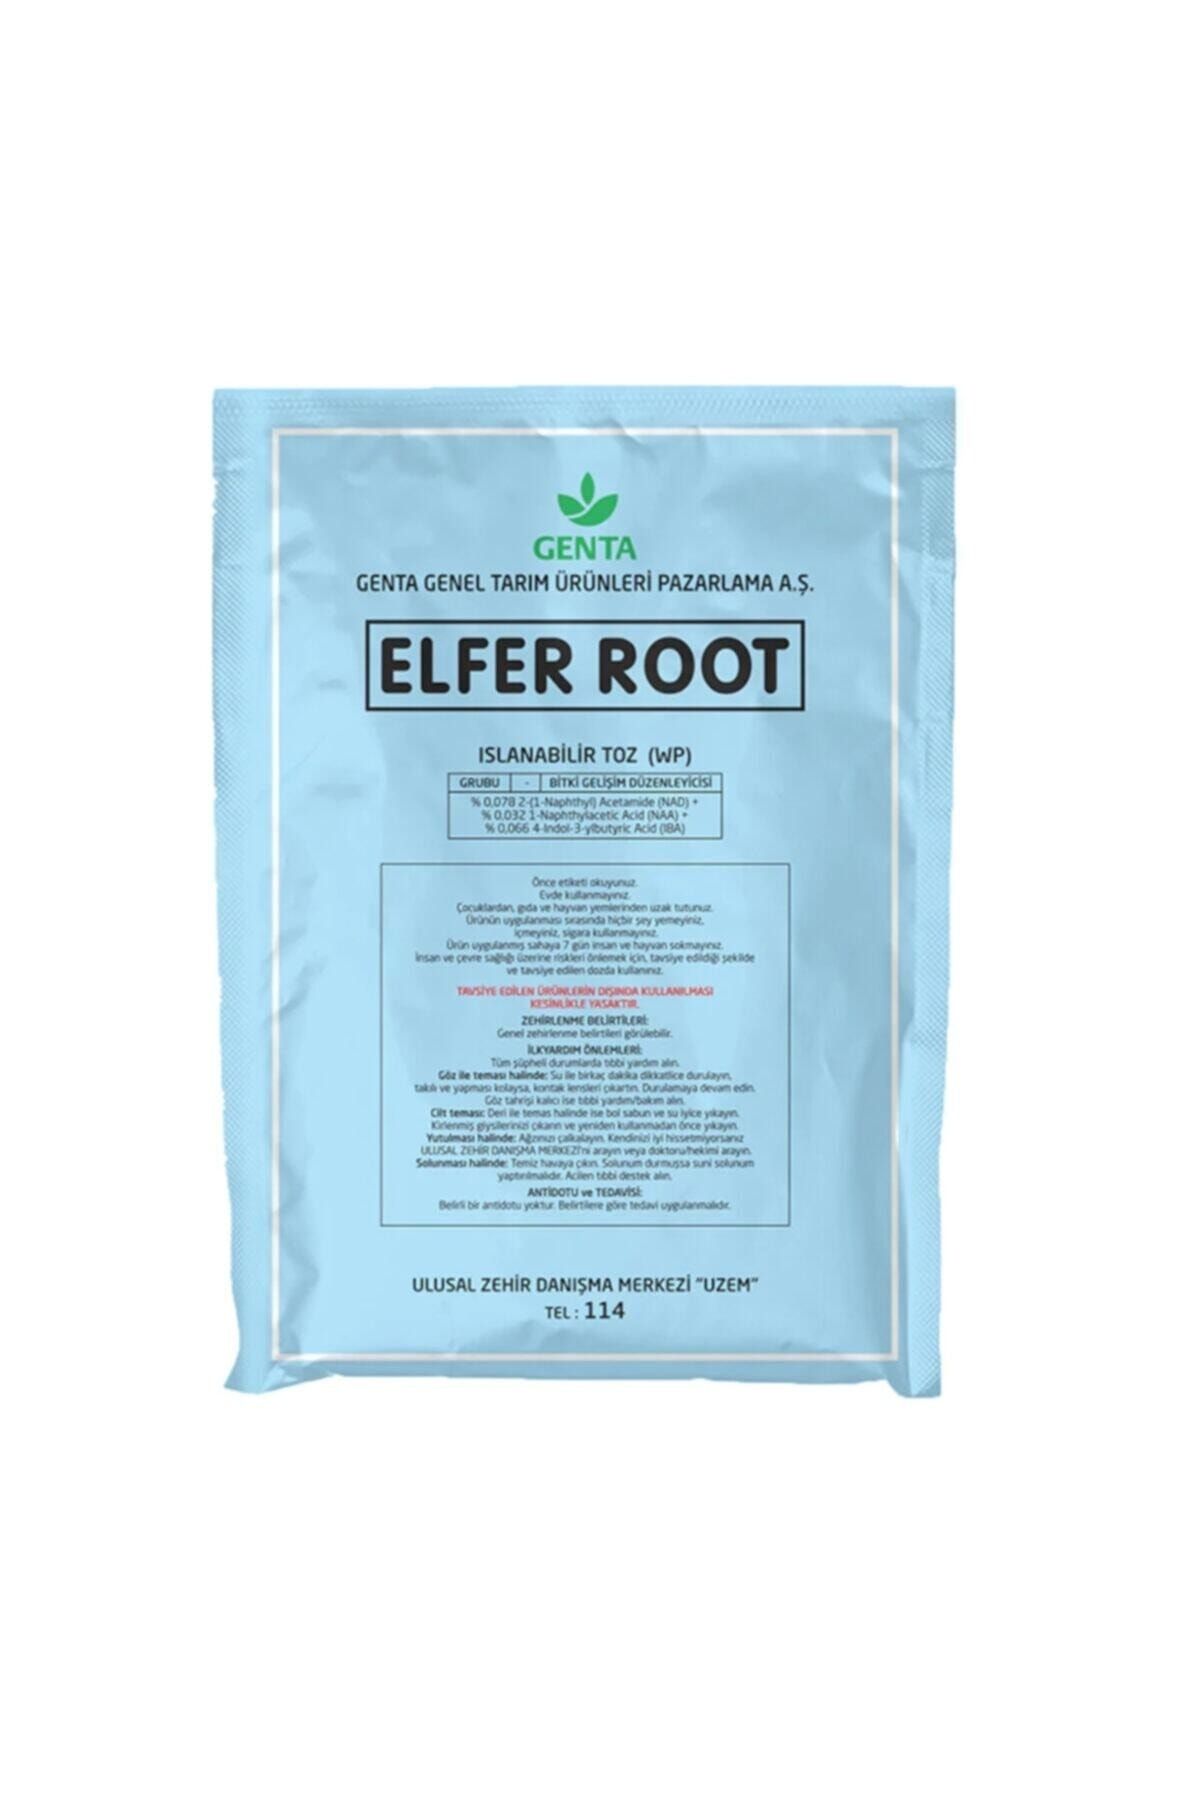 Genta Köklendirici Hormon Elfer Root (50 Gr) Indol Bütirik Asit